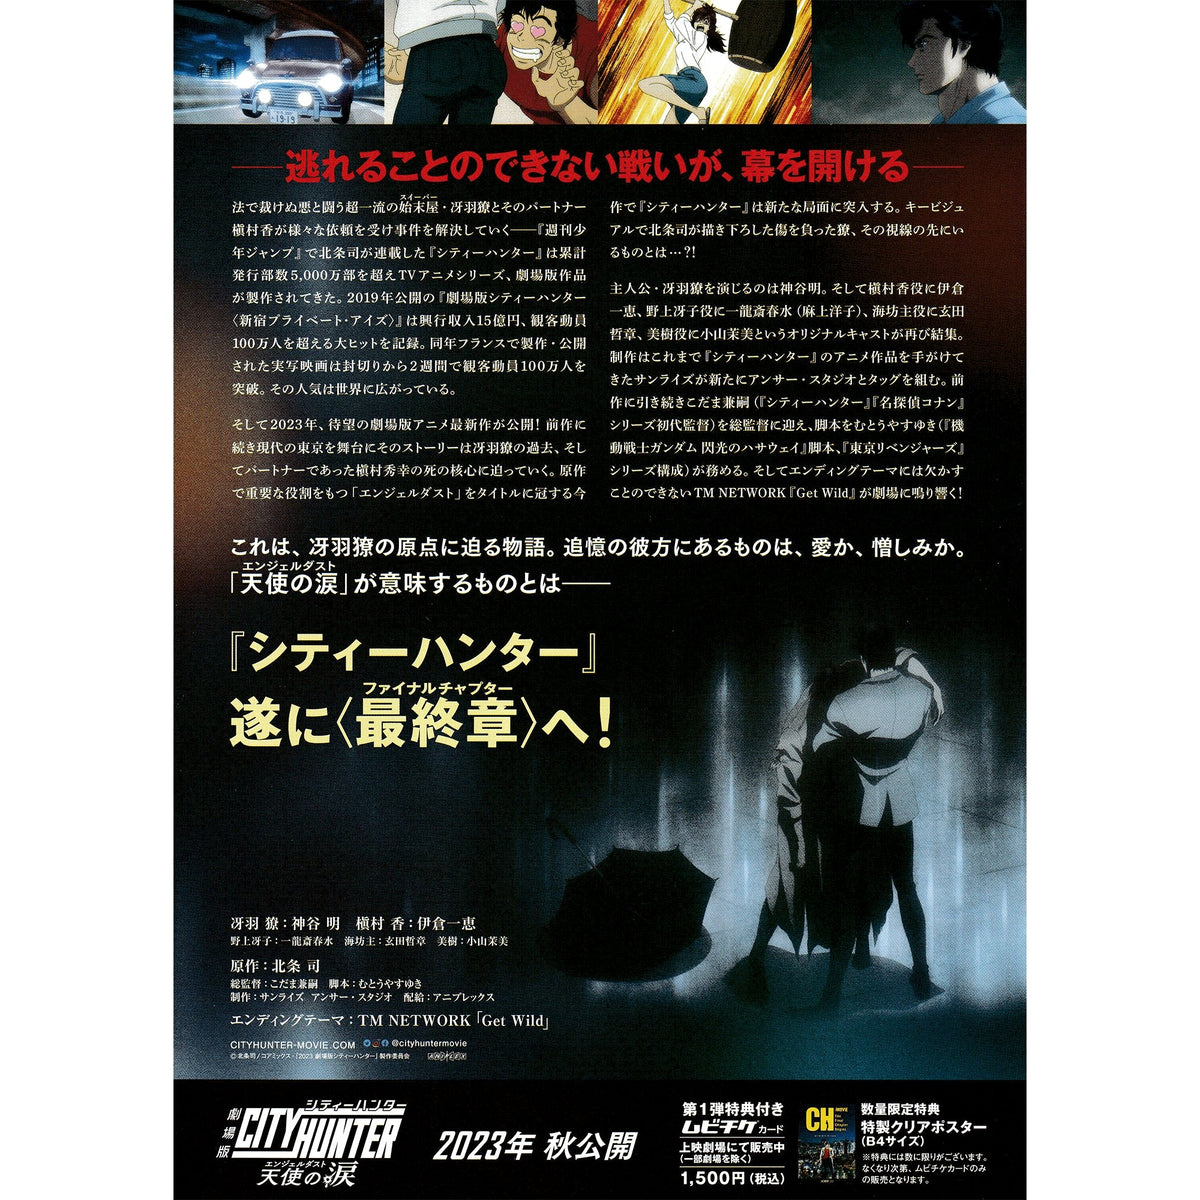 TSURUNE -TSUNAGARI NO ISSHA- 3 (Blu-ray1)